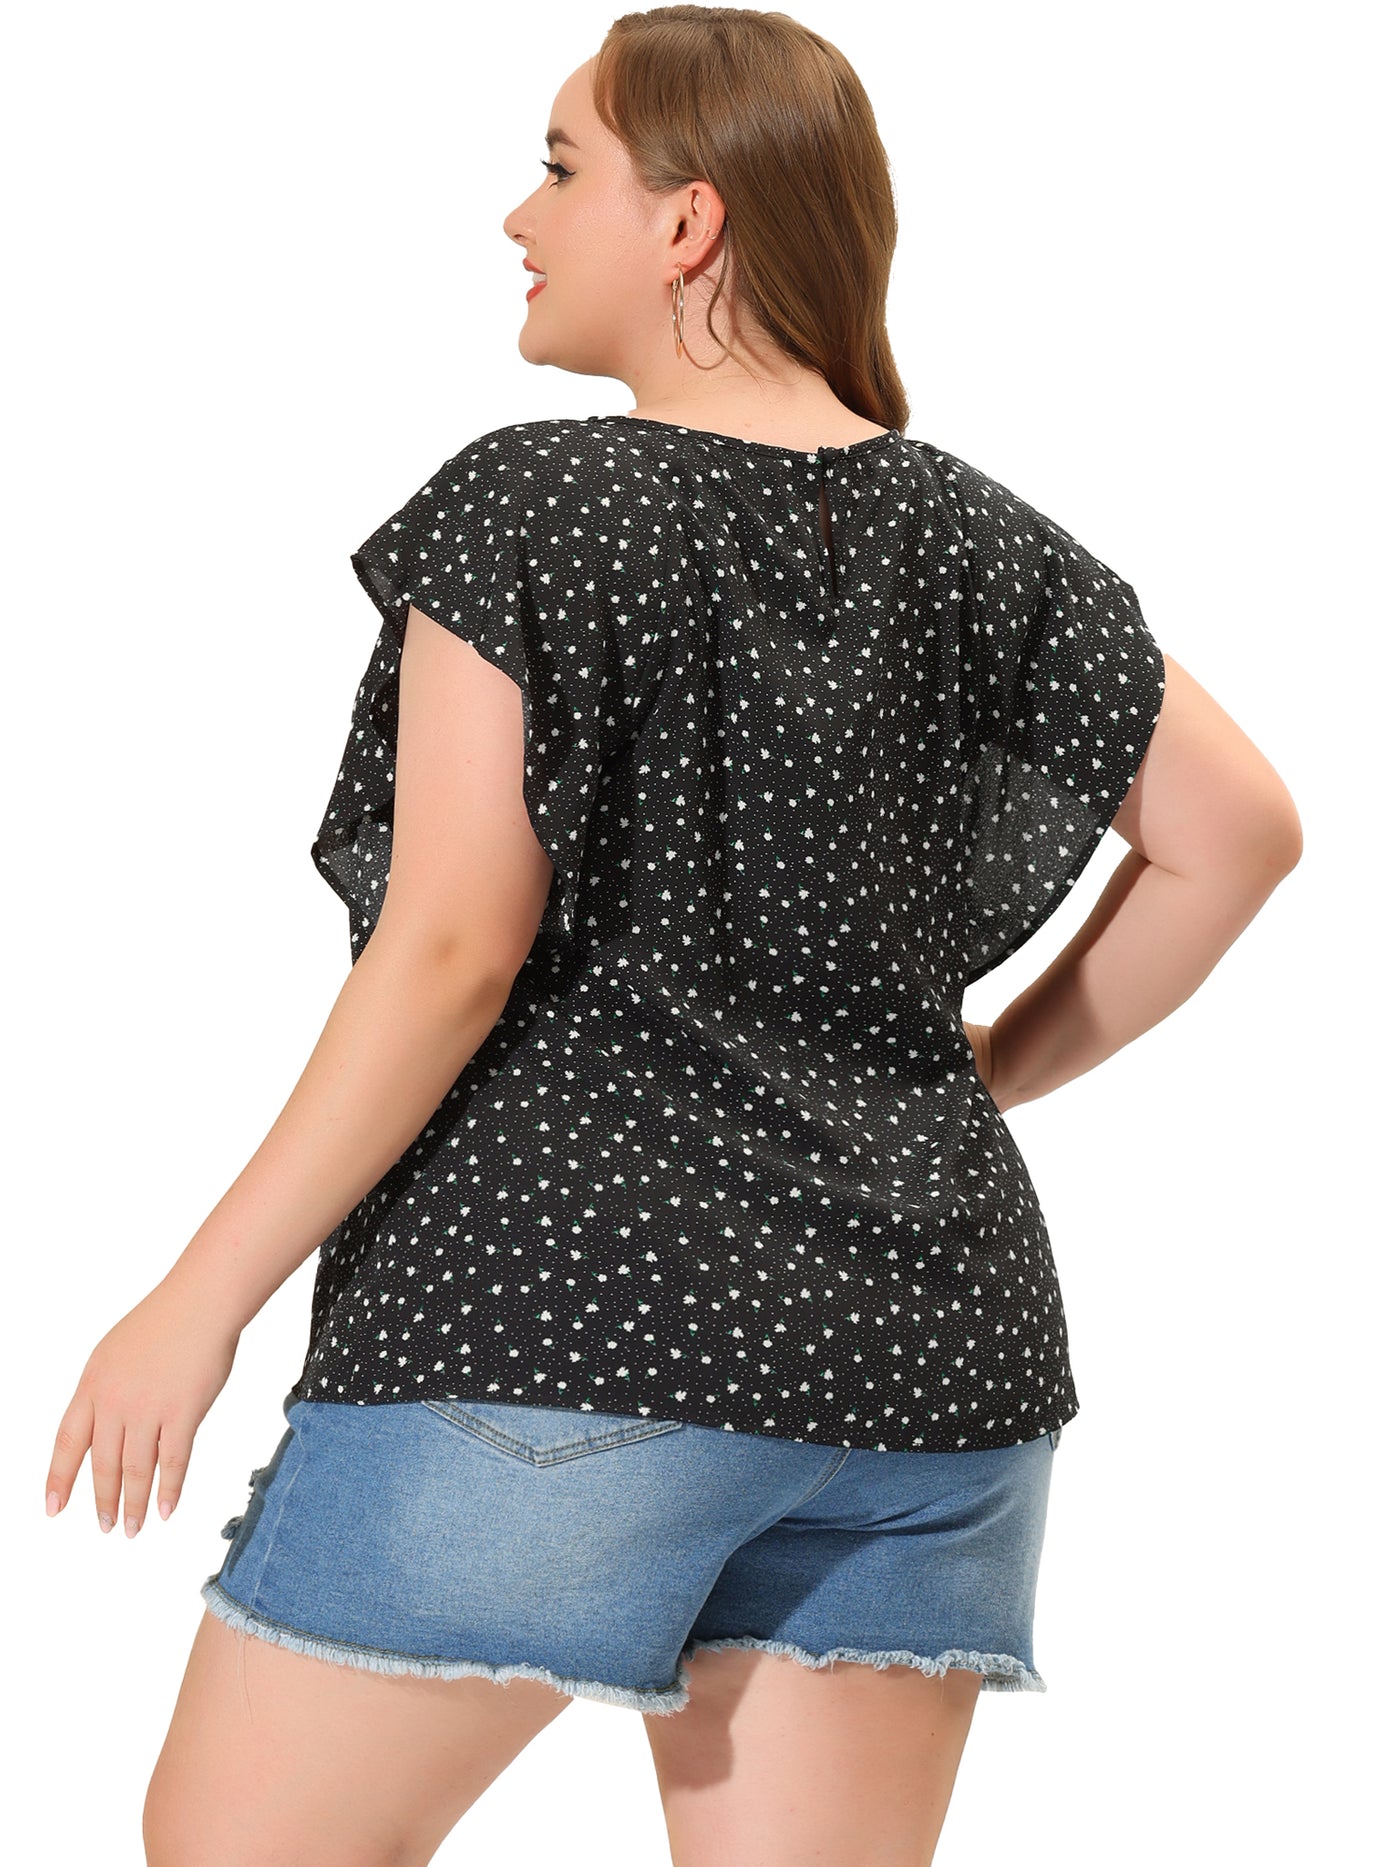 Bublédon Women's Plus Size Chiffon Polka Dot Tank Top